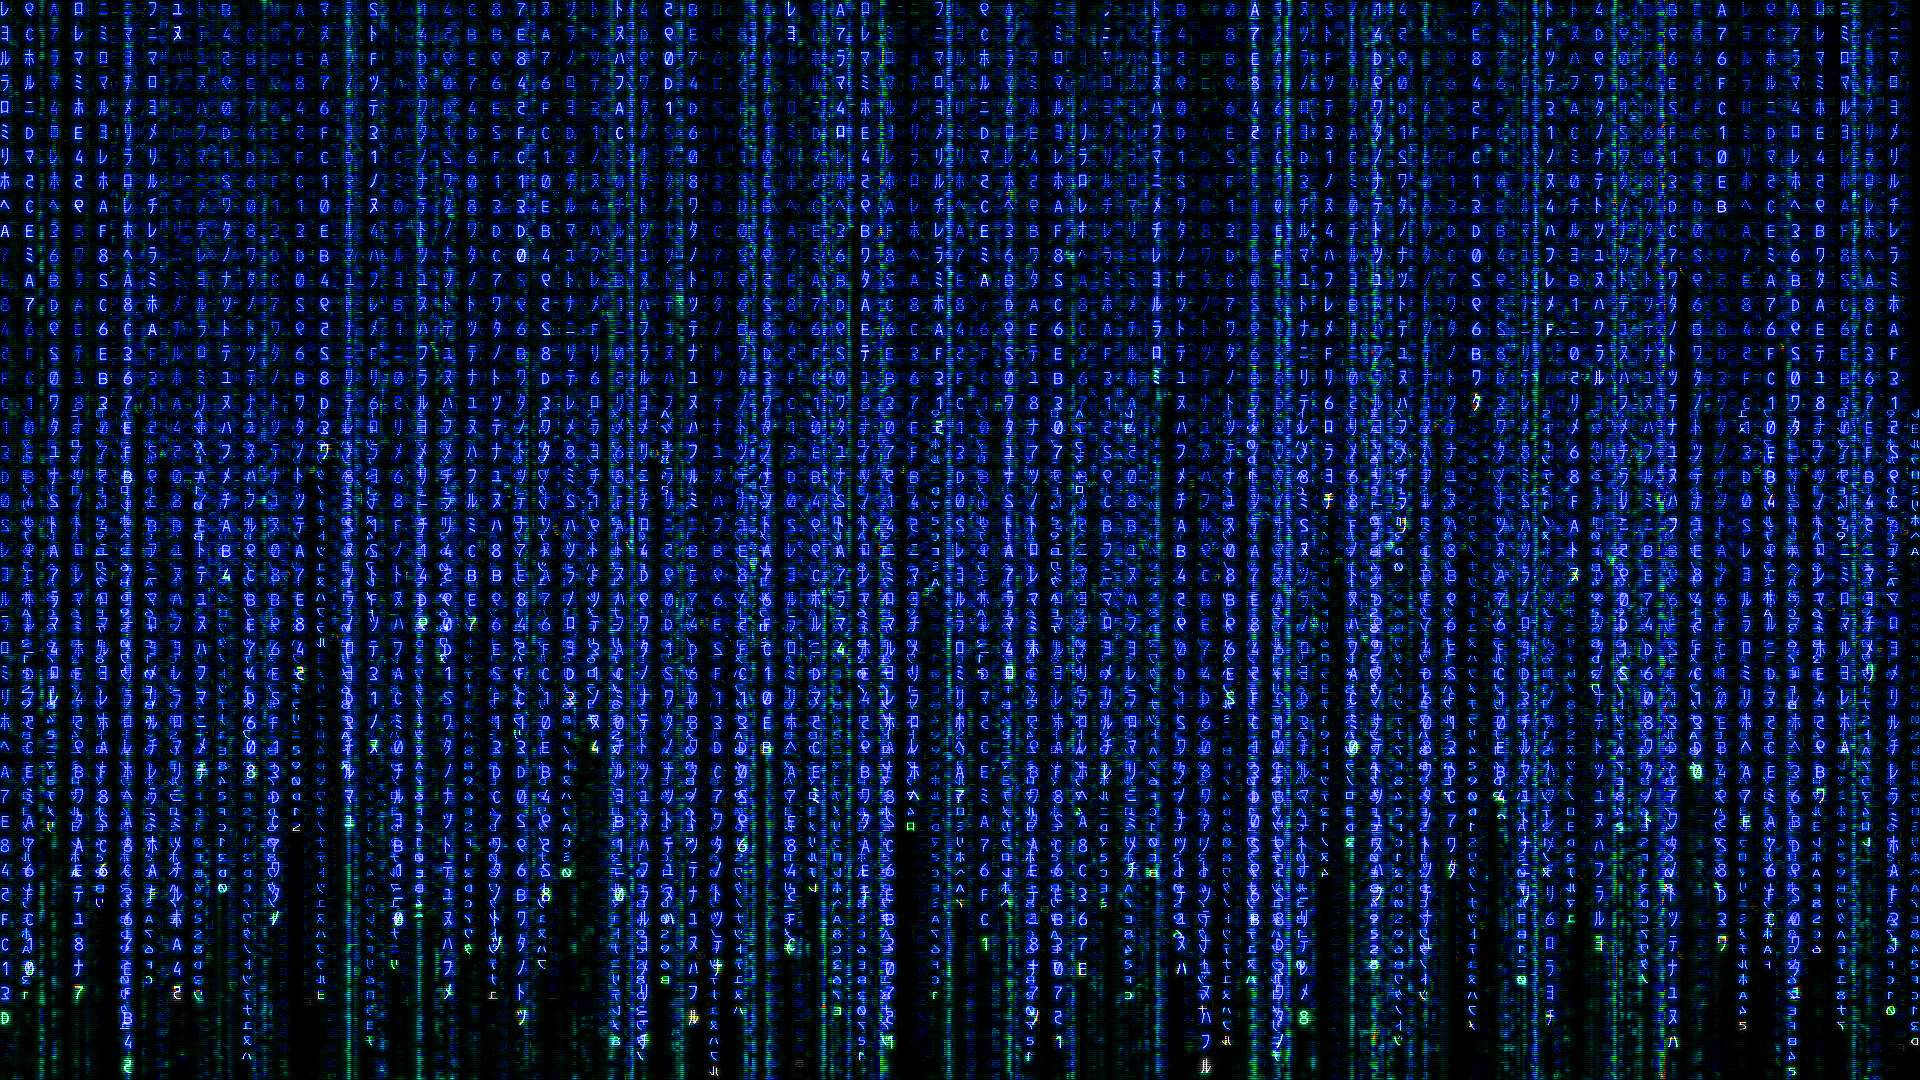 Hình nền Matrix đẹp mắt sẽ khiến bạn đắm say vào thế giới ảo đầy bí ẩn và tiên tiến. Bạn sẽ không tin được đâu là thế giới thực, đâu là thế giới ảo. Hãy xem ảnh liên quan và khám phá thế giới Matrix đầy huyền bí này ngay bây giờ!